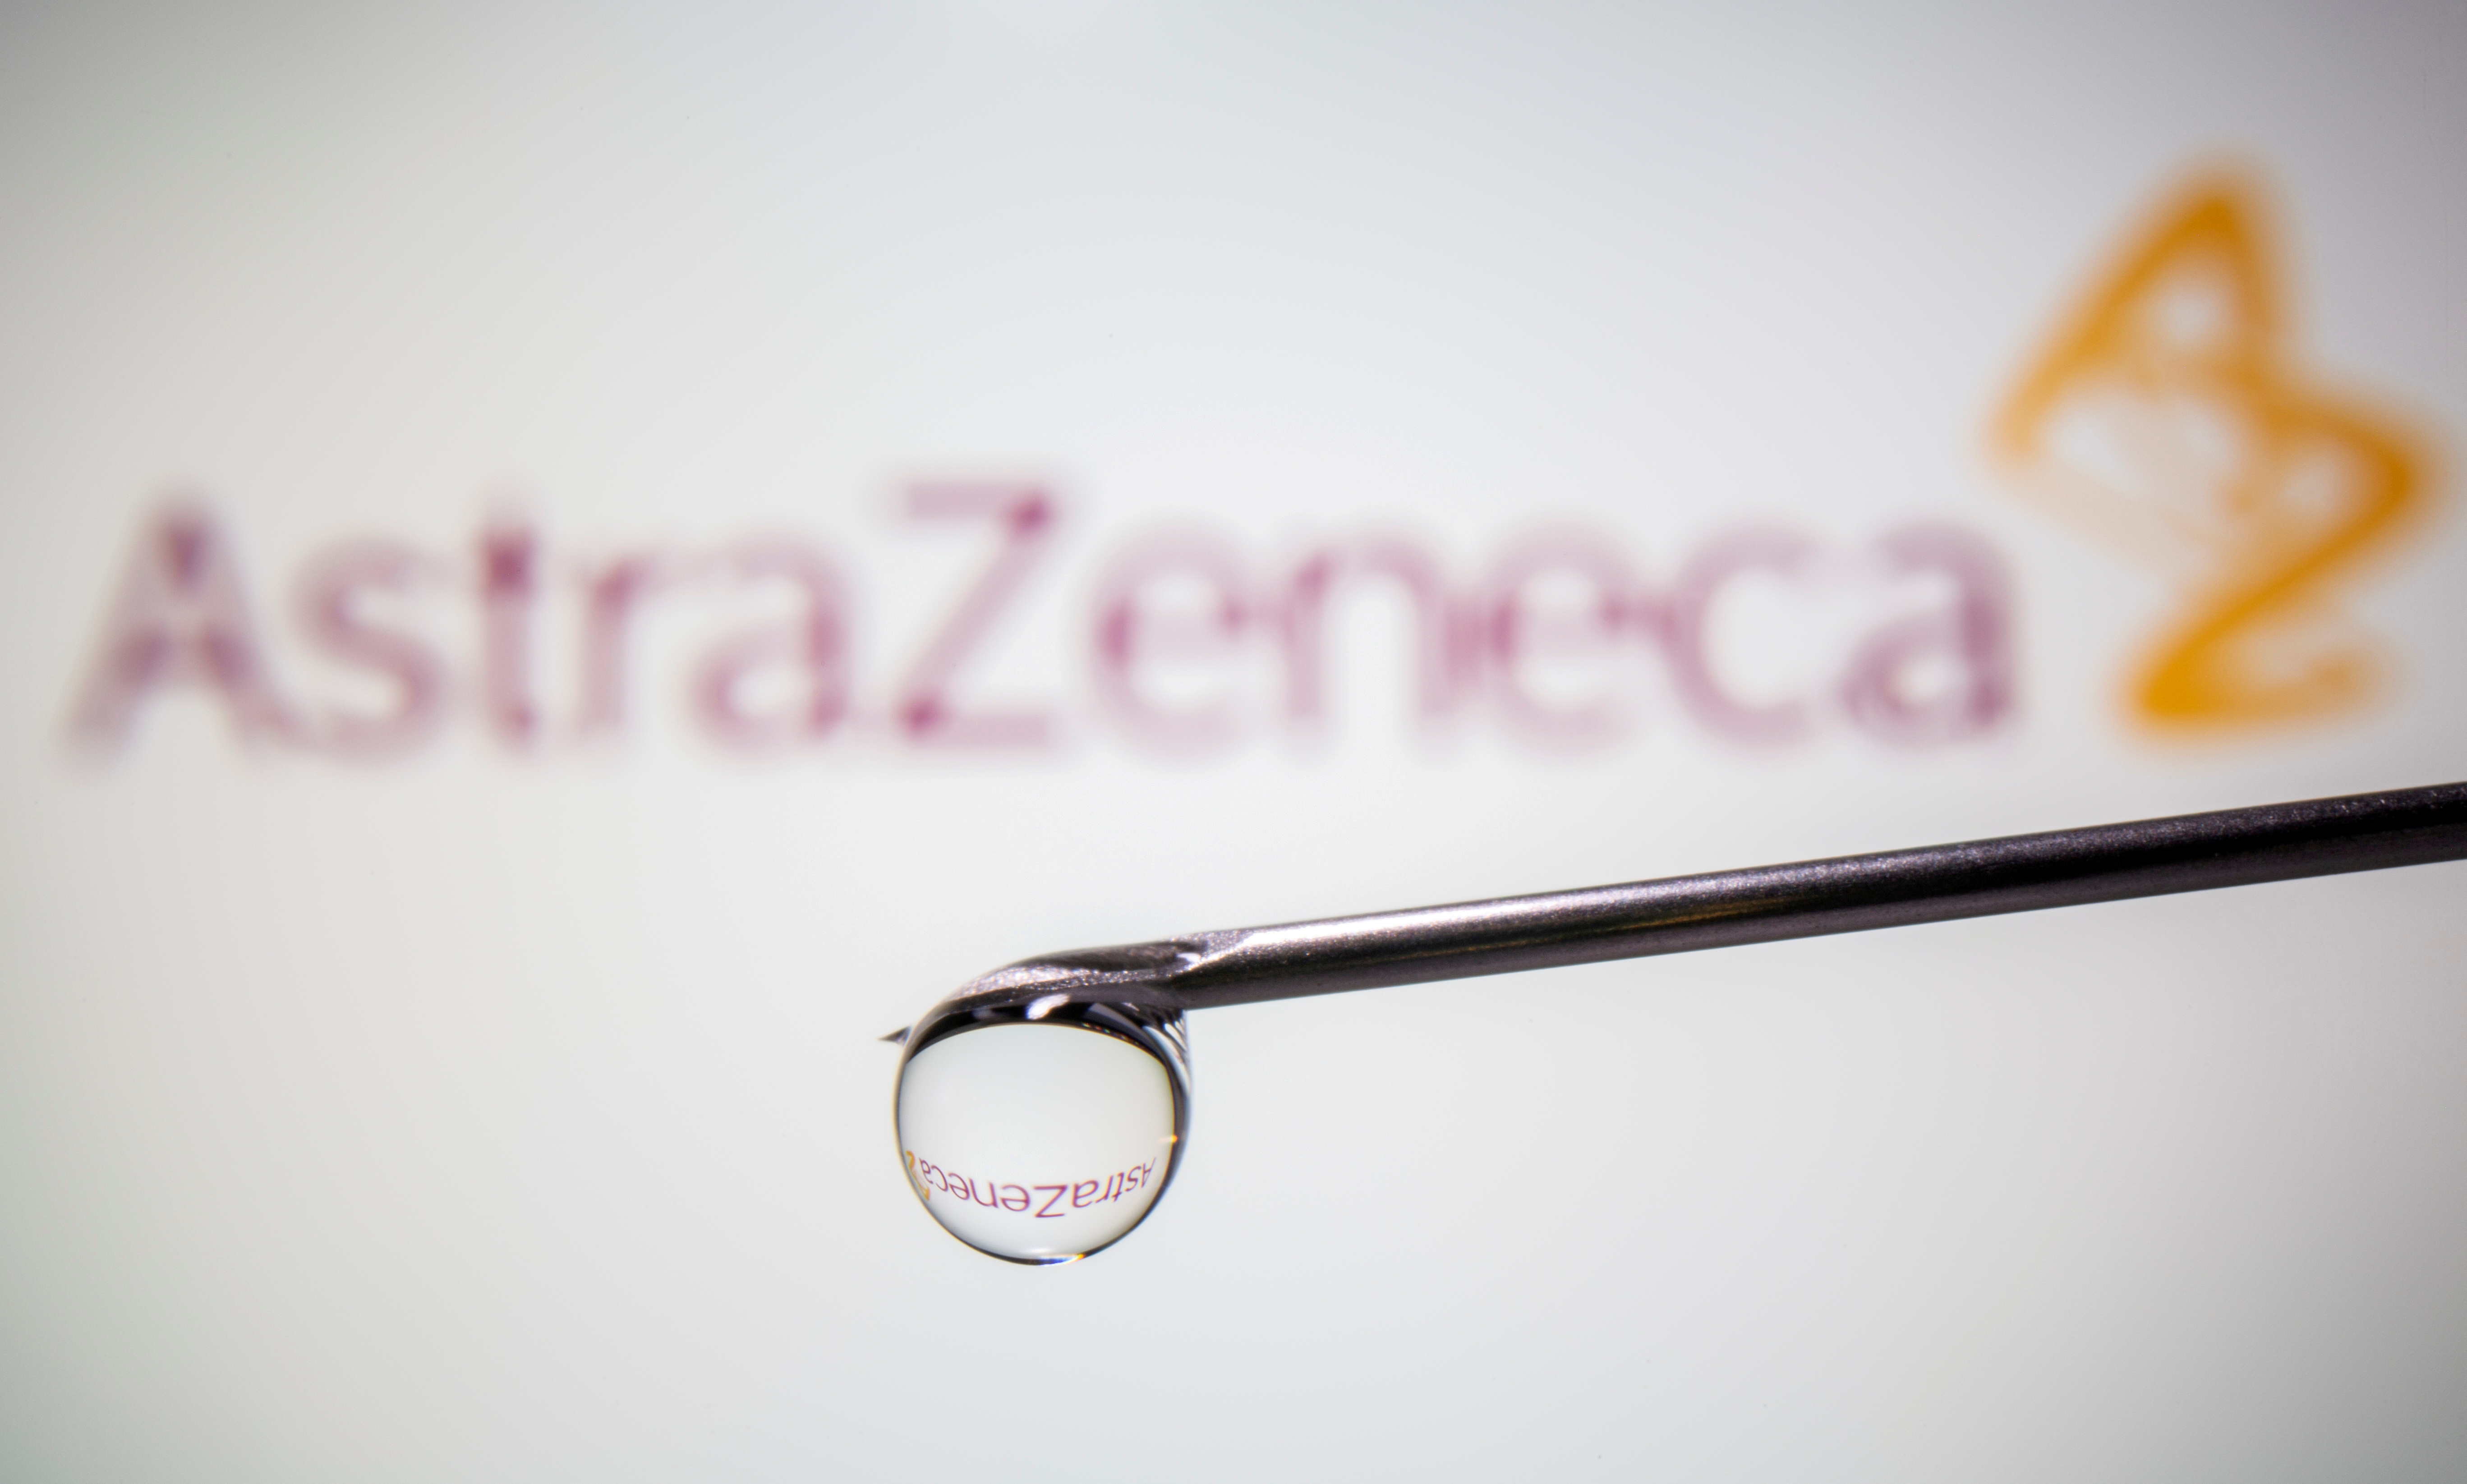 Agencia Europea de Medicamentos podría decidir sobre vacuna de AstraZeneca a finales de enero